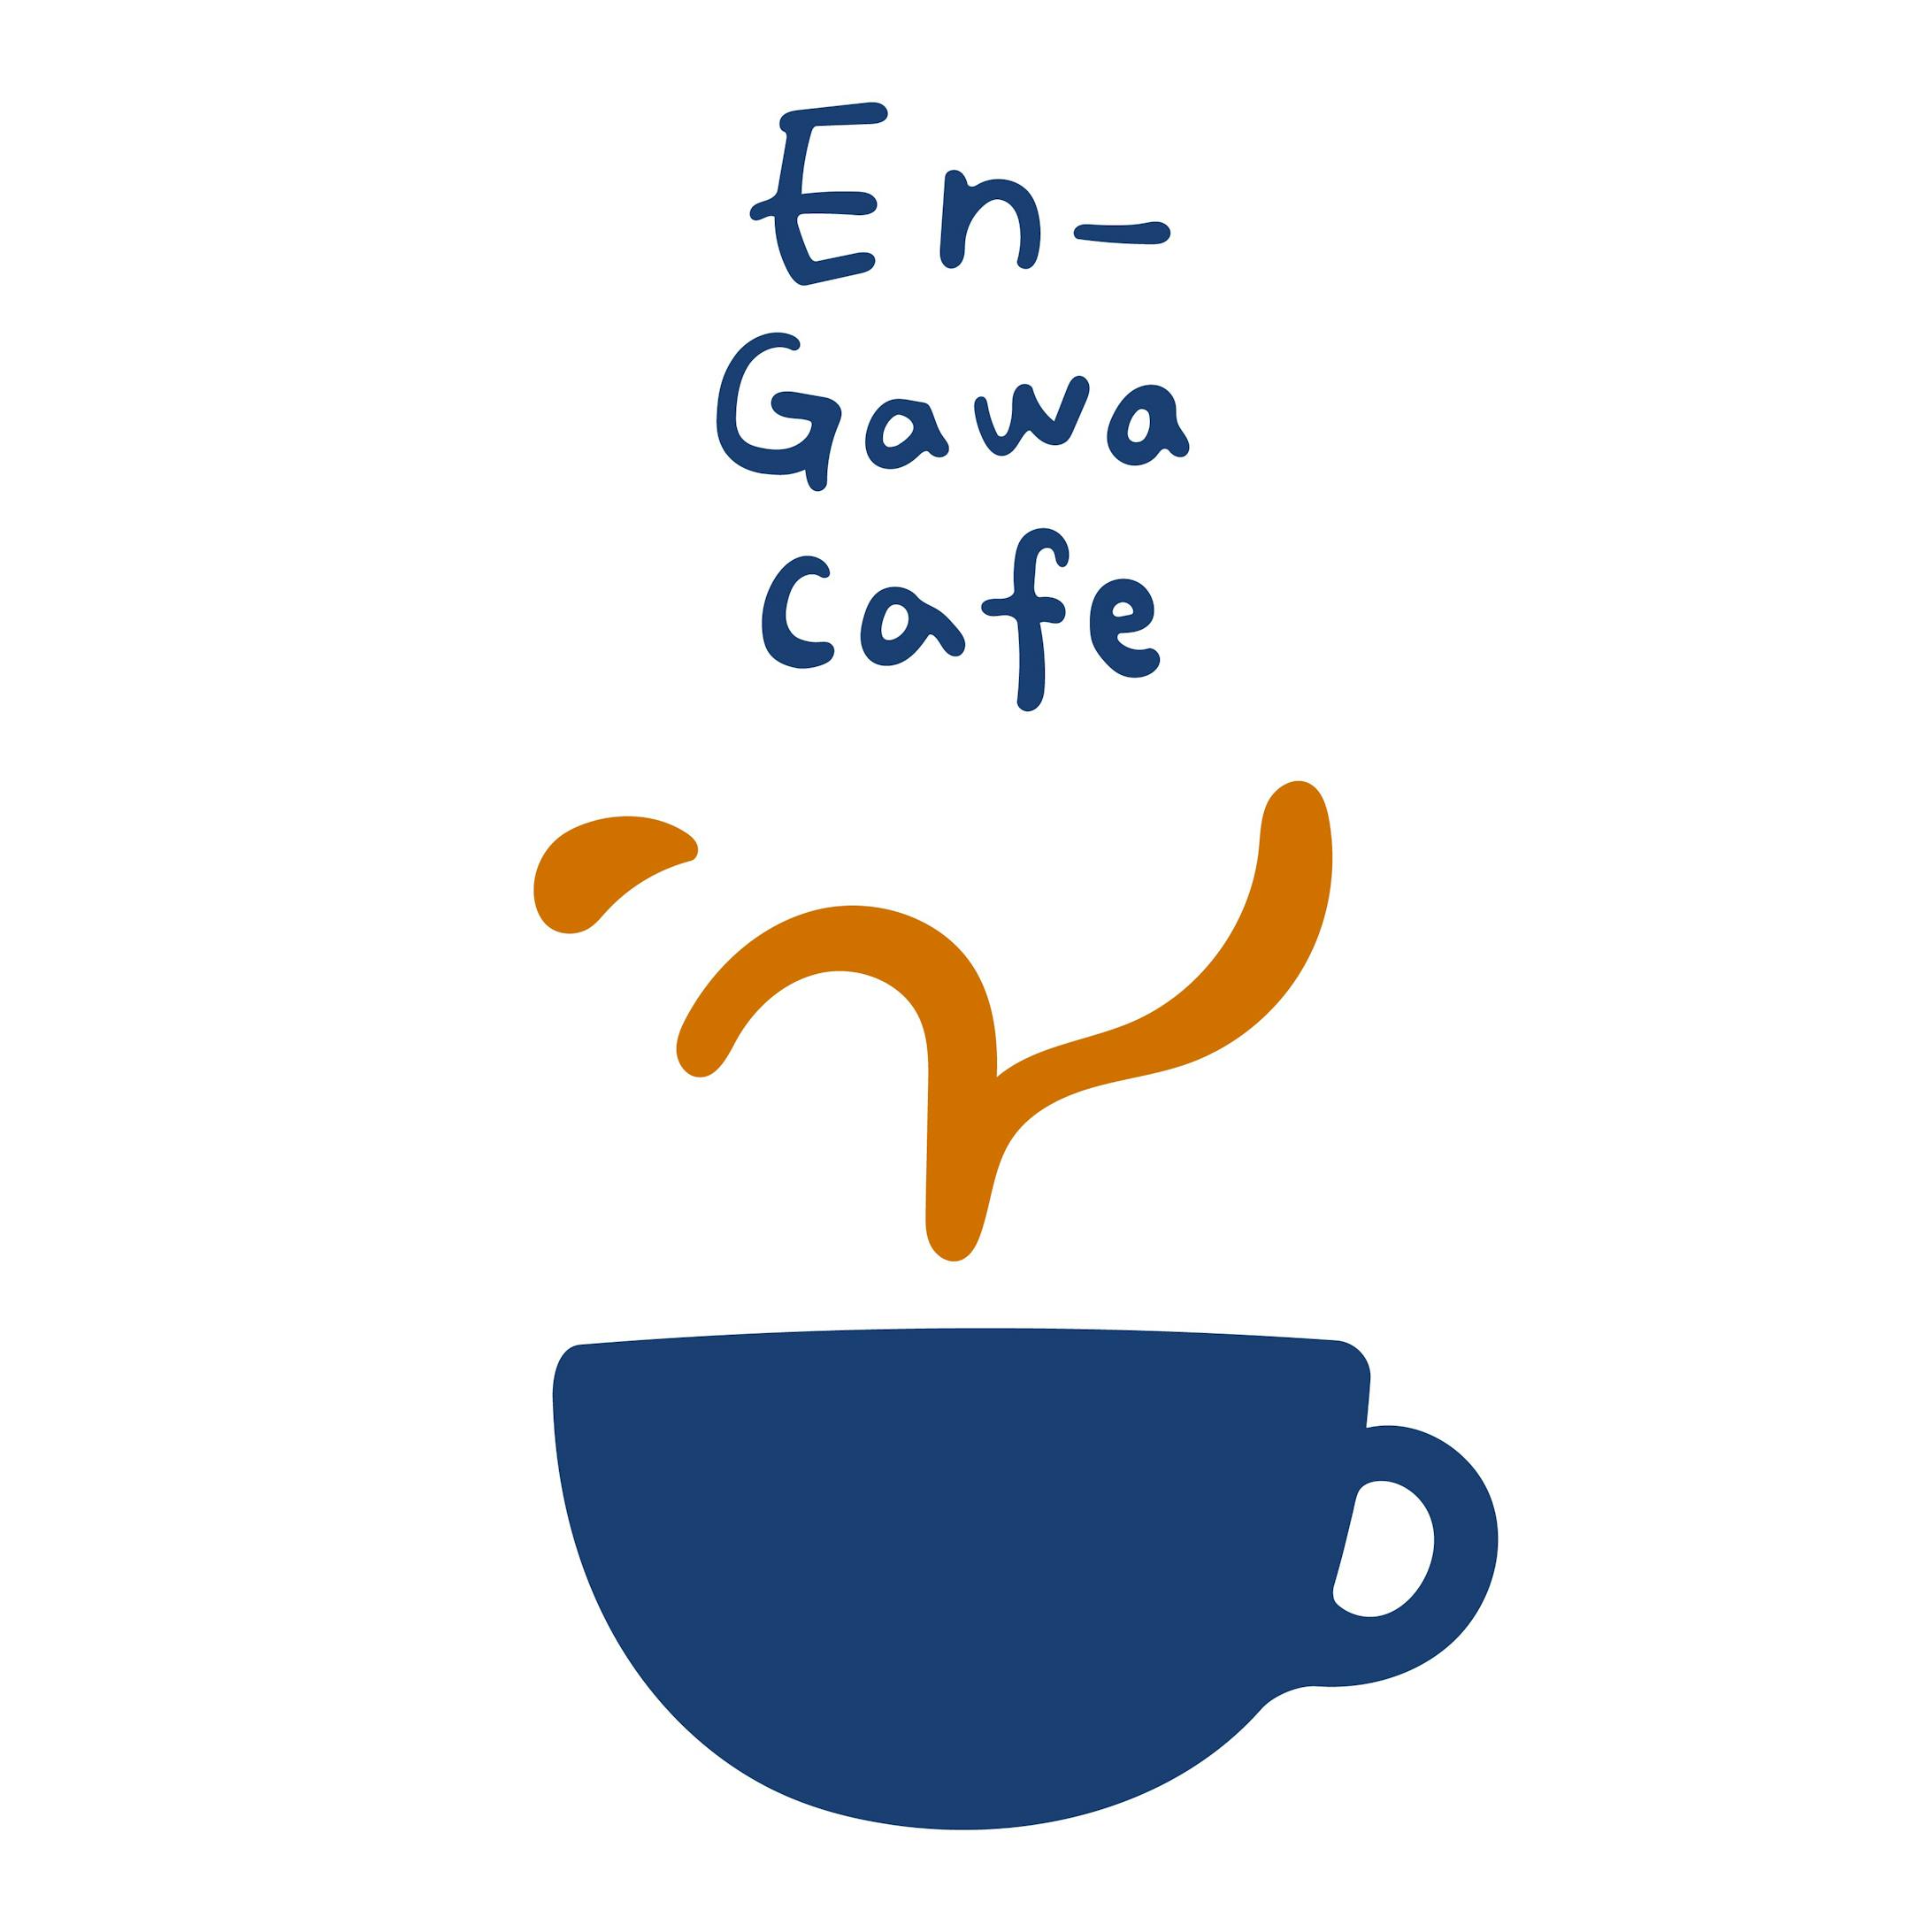 En-Gawa Cafe ロゴデザイン-1